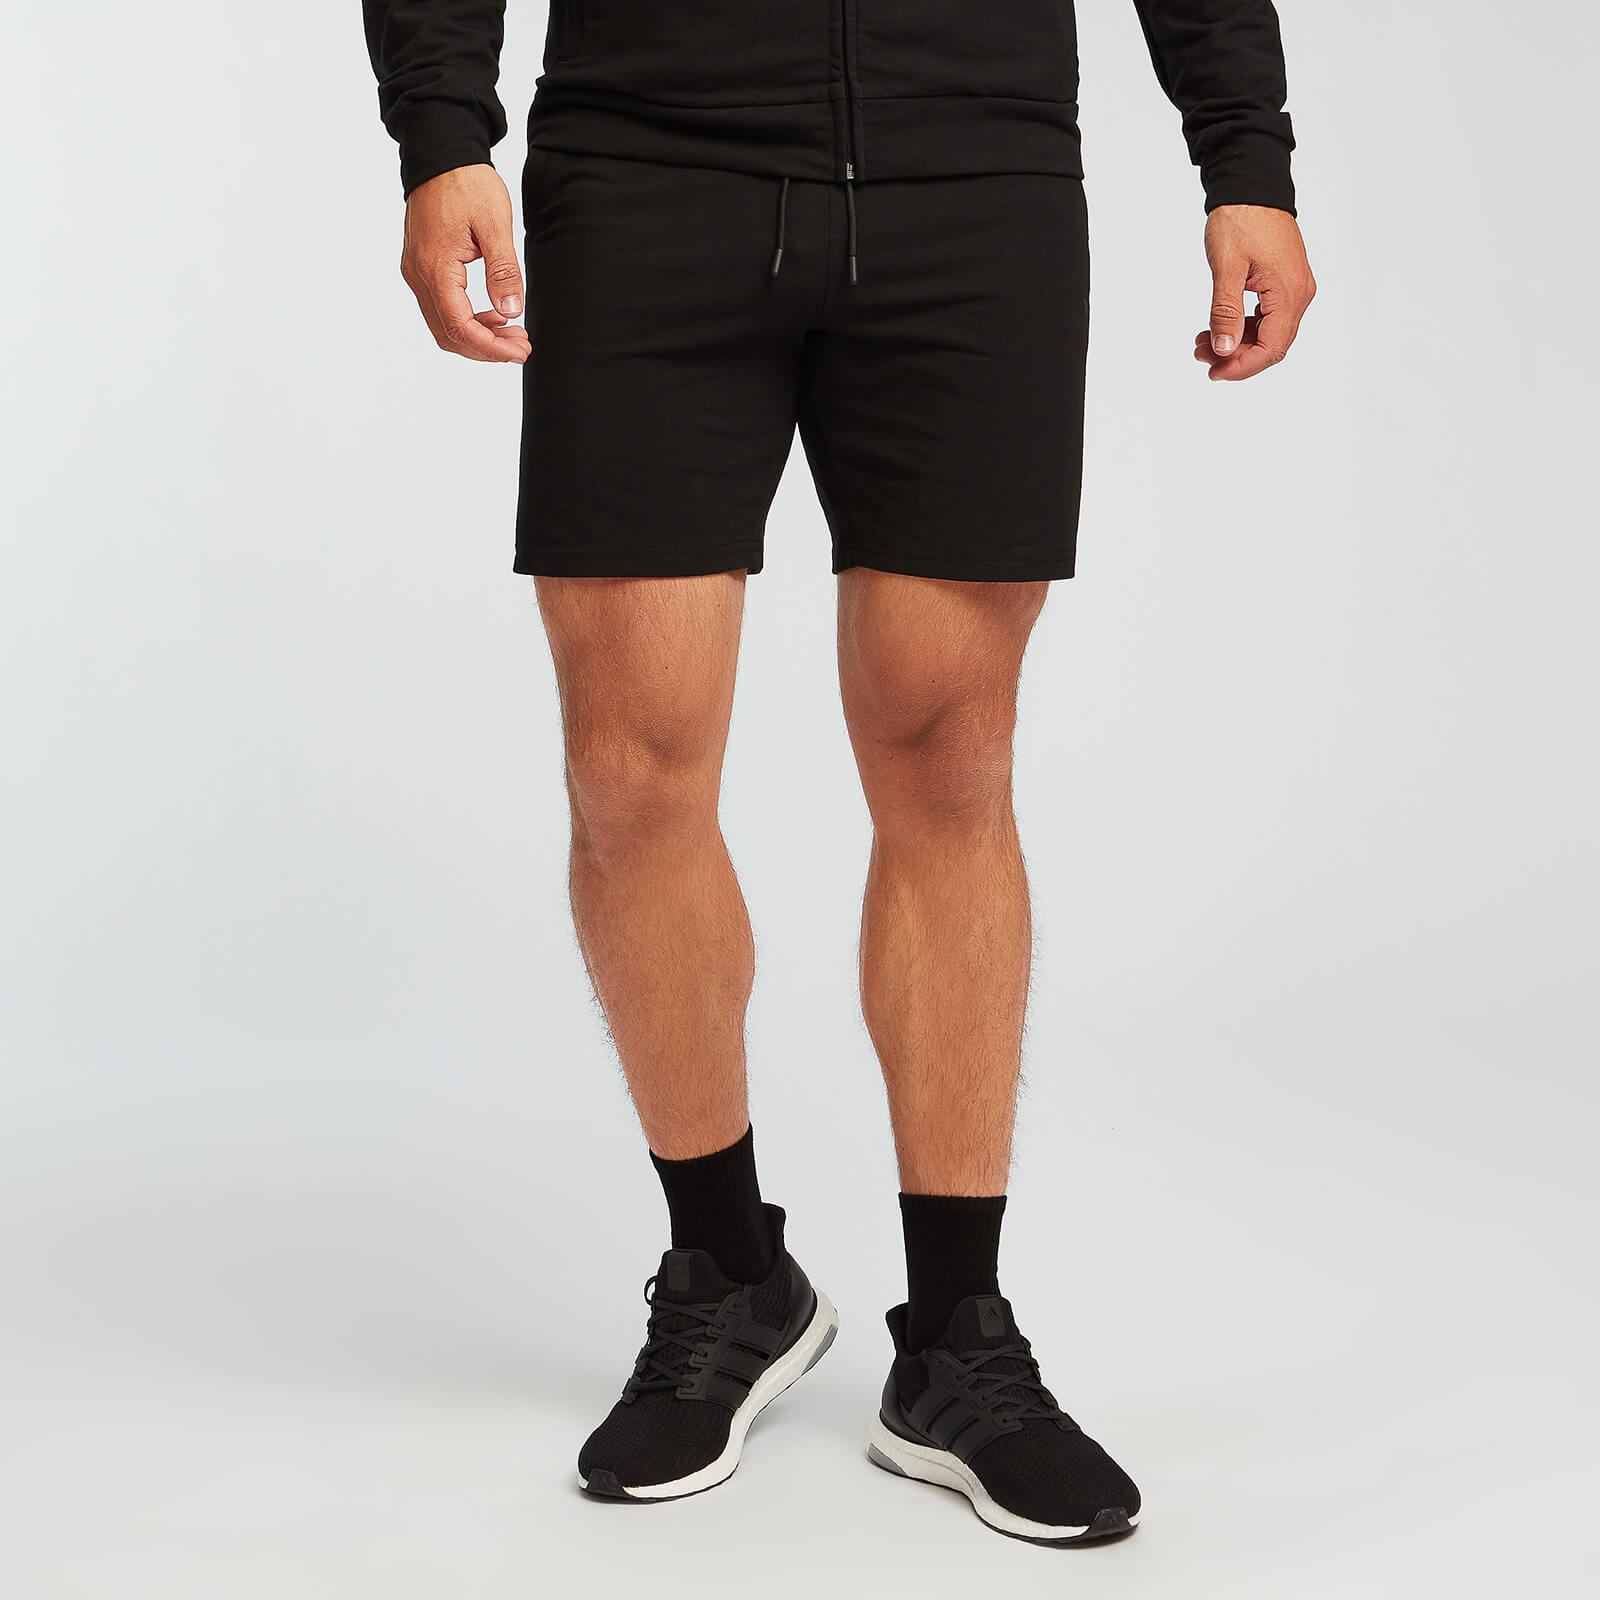 Pantalón de chándal corto Form para hombre de MP - Negro - XL